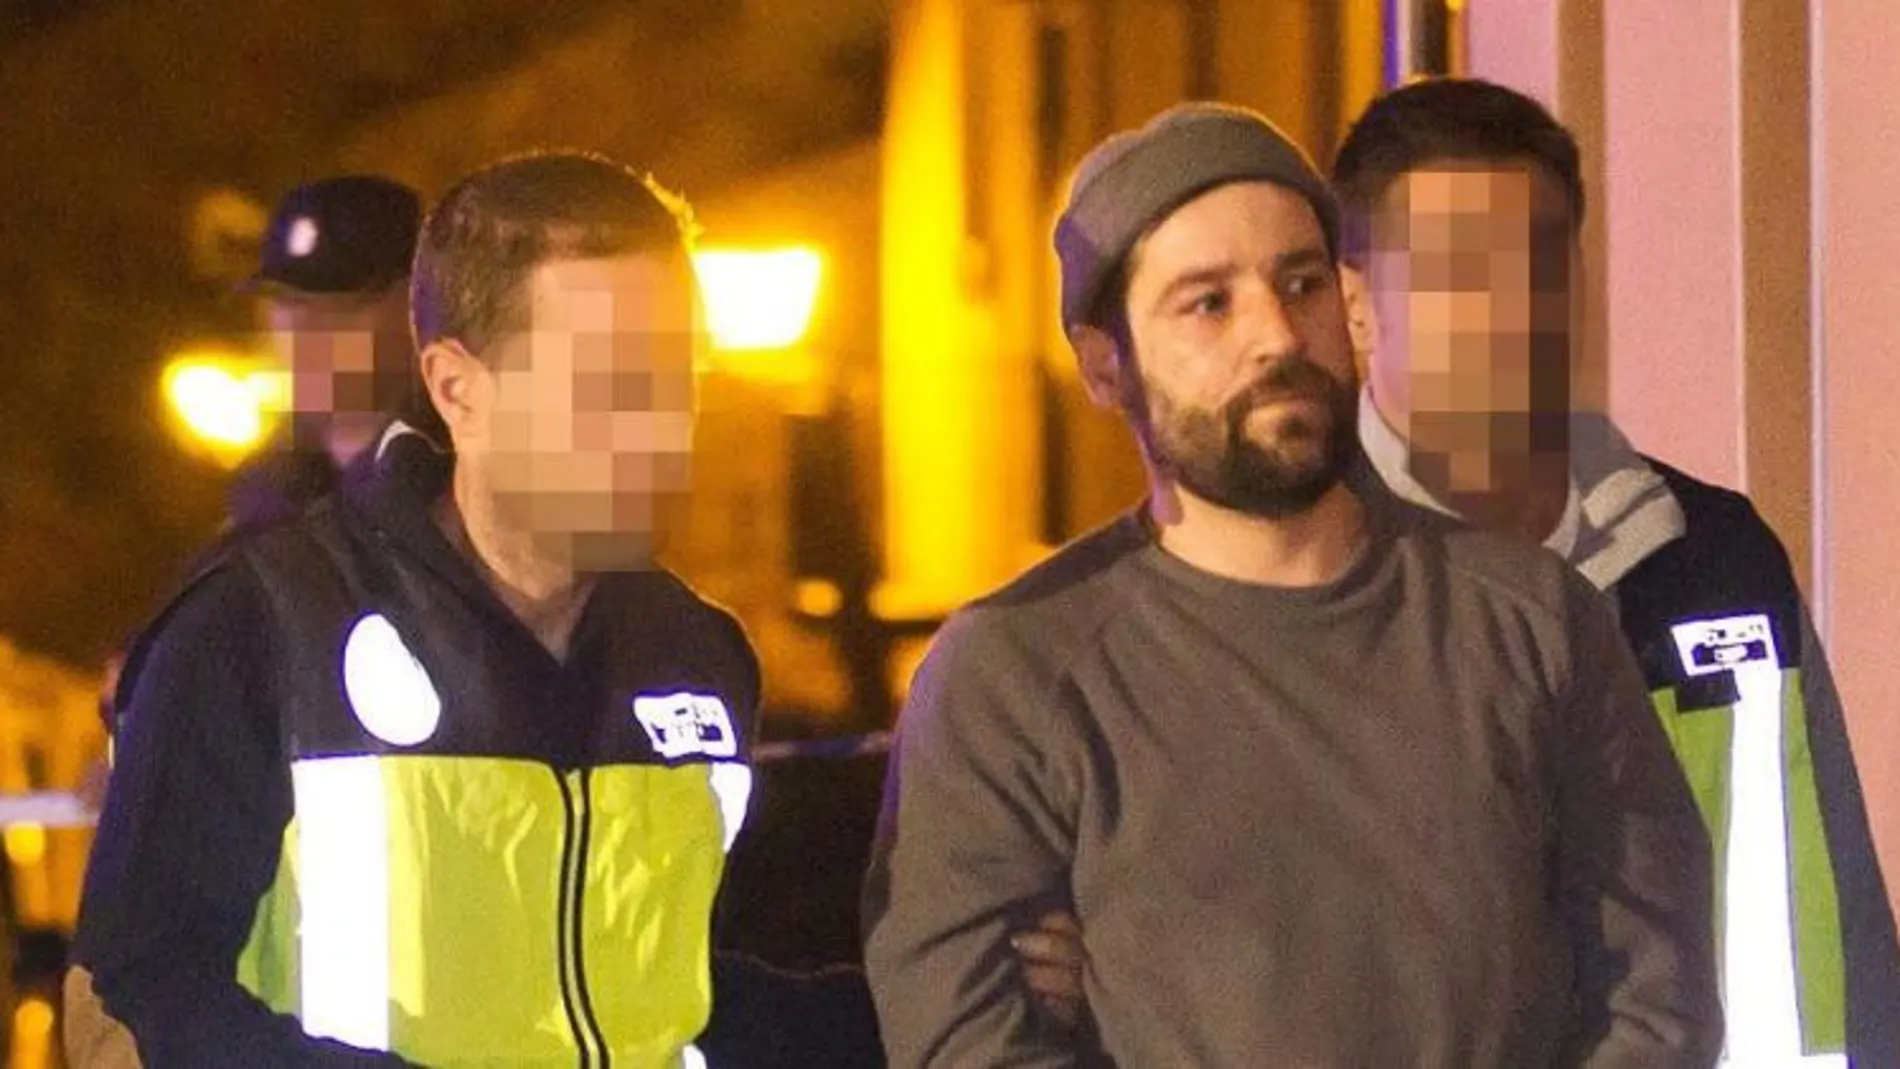 Daniel Pérez B., de 37 años, es trasladado por agentes de la policía hasta su casa en Bronchales (Teruel)